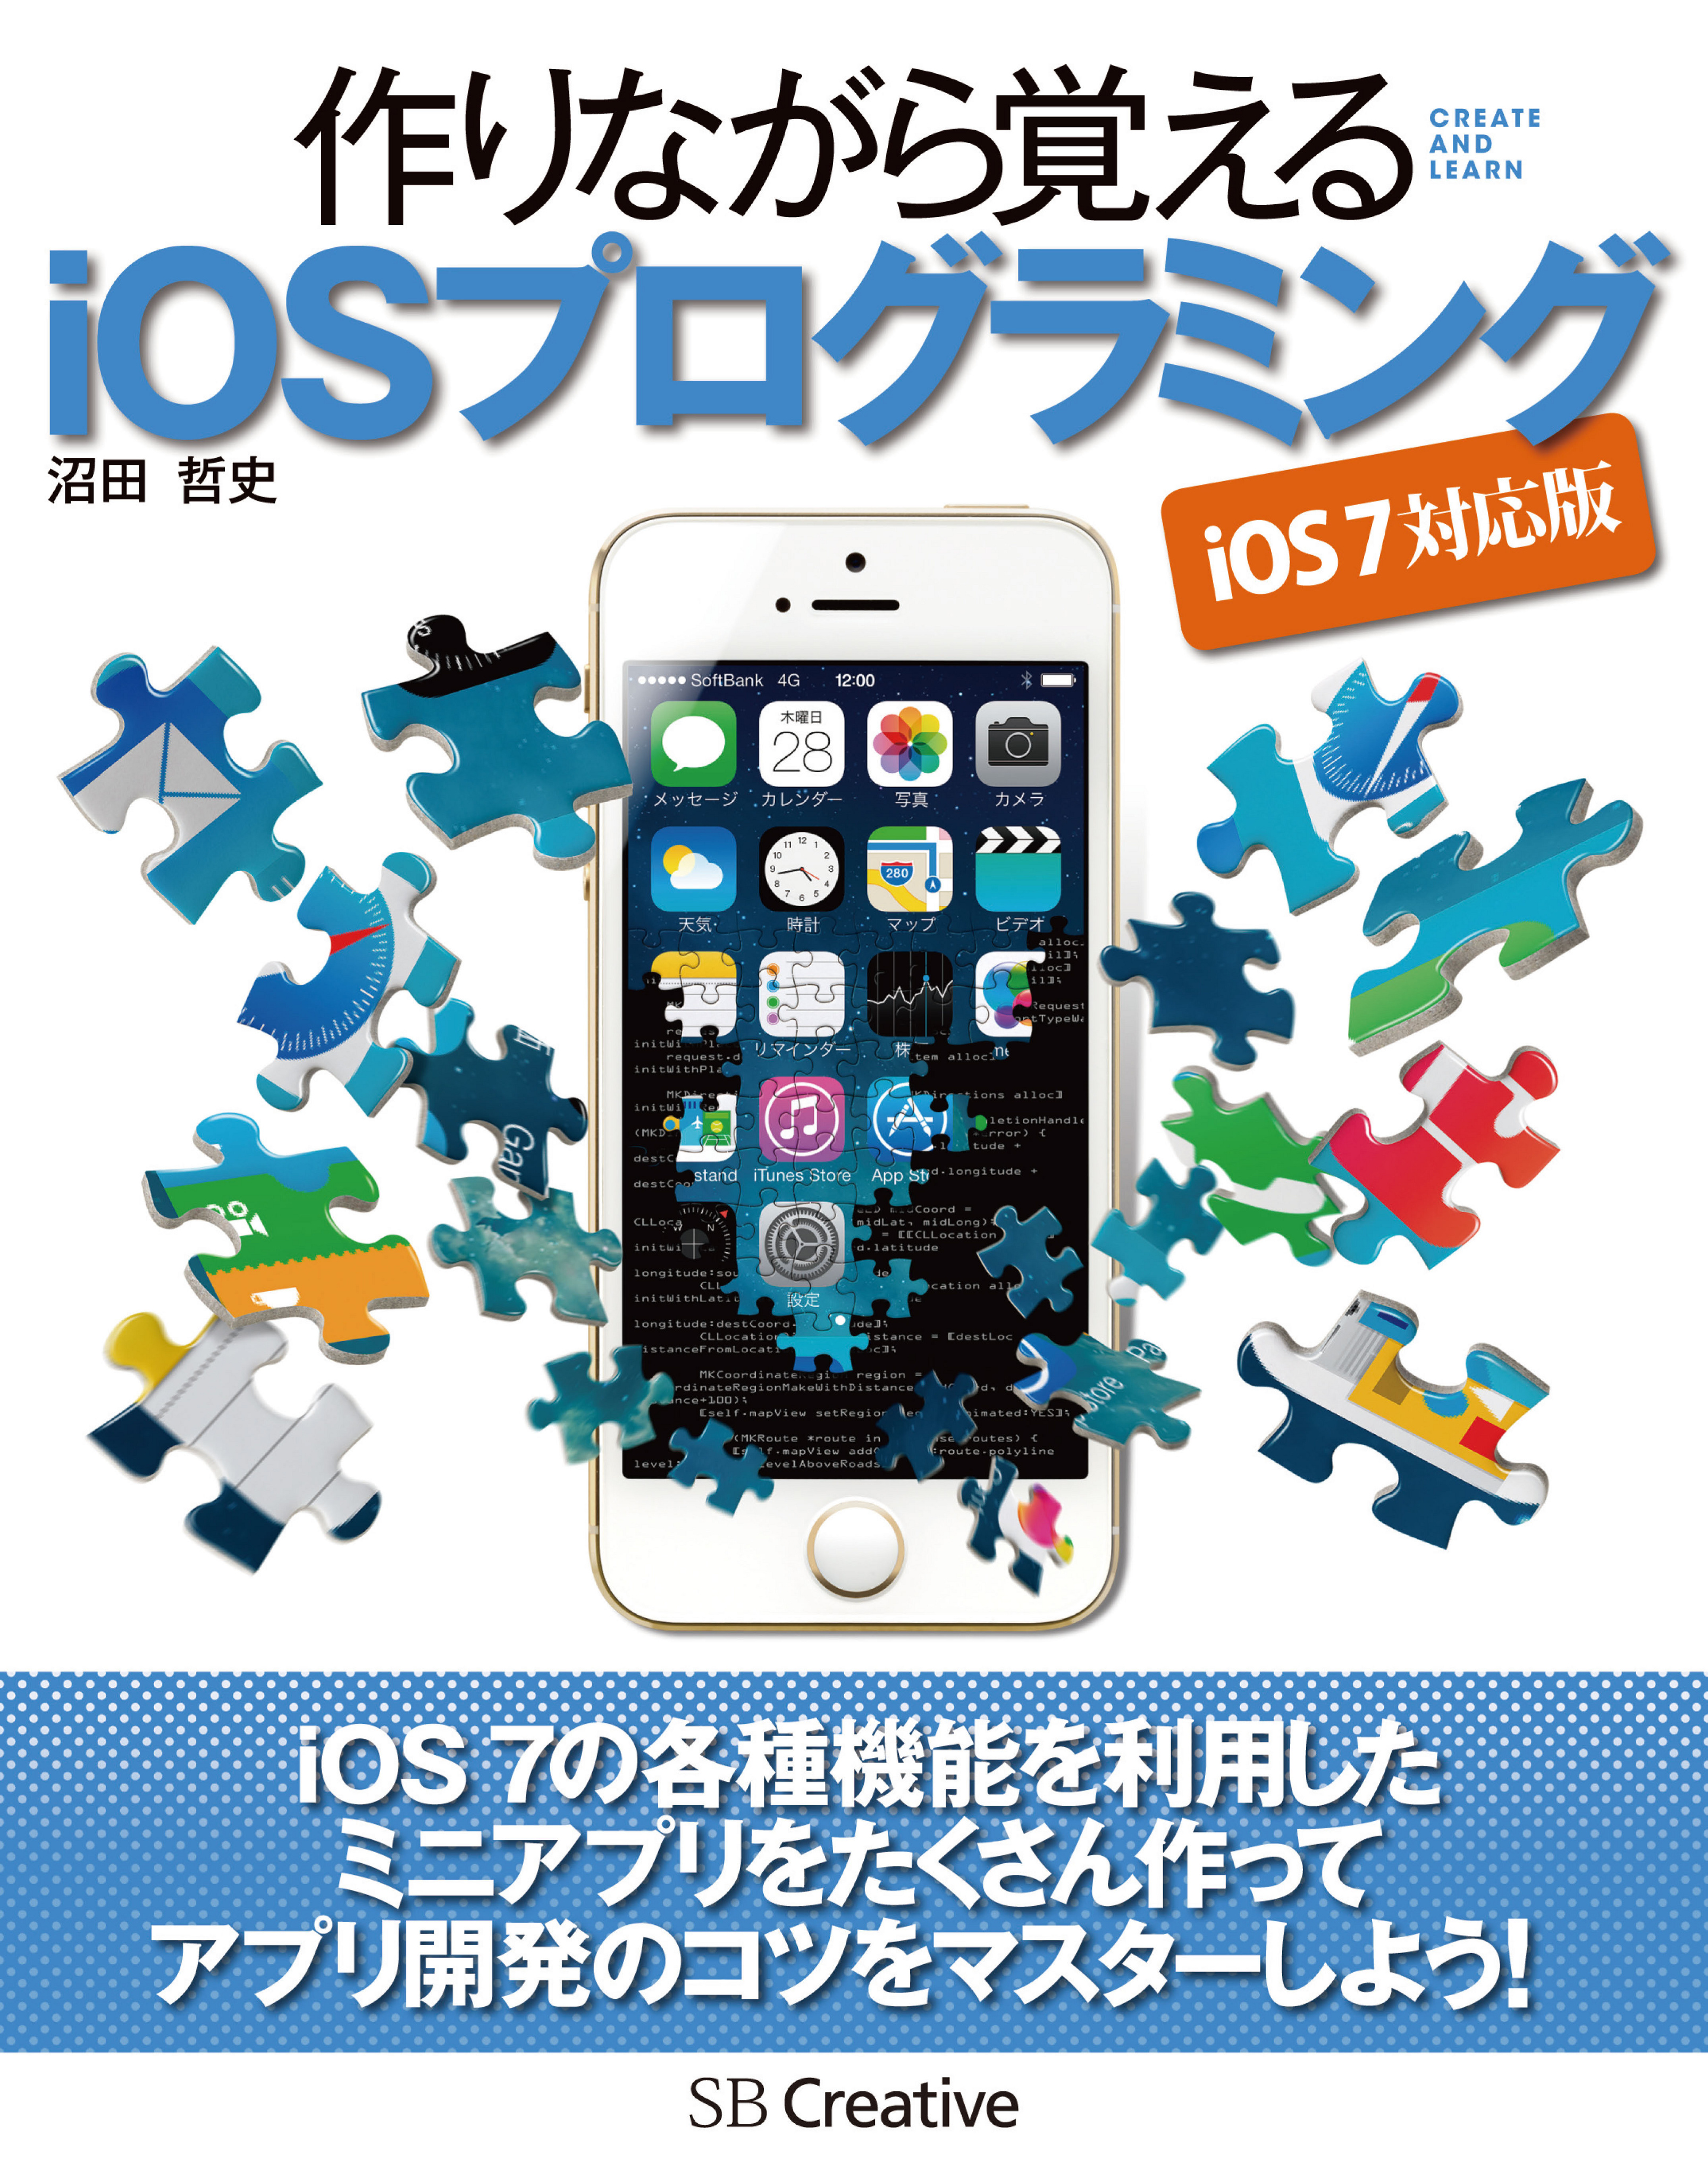 作りながら覚える iOSプログラミング iOS 7 対応版 - 沼田哲史 - 漫画・無料試し読みなら、電子書籍ストア ブックライブ